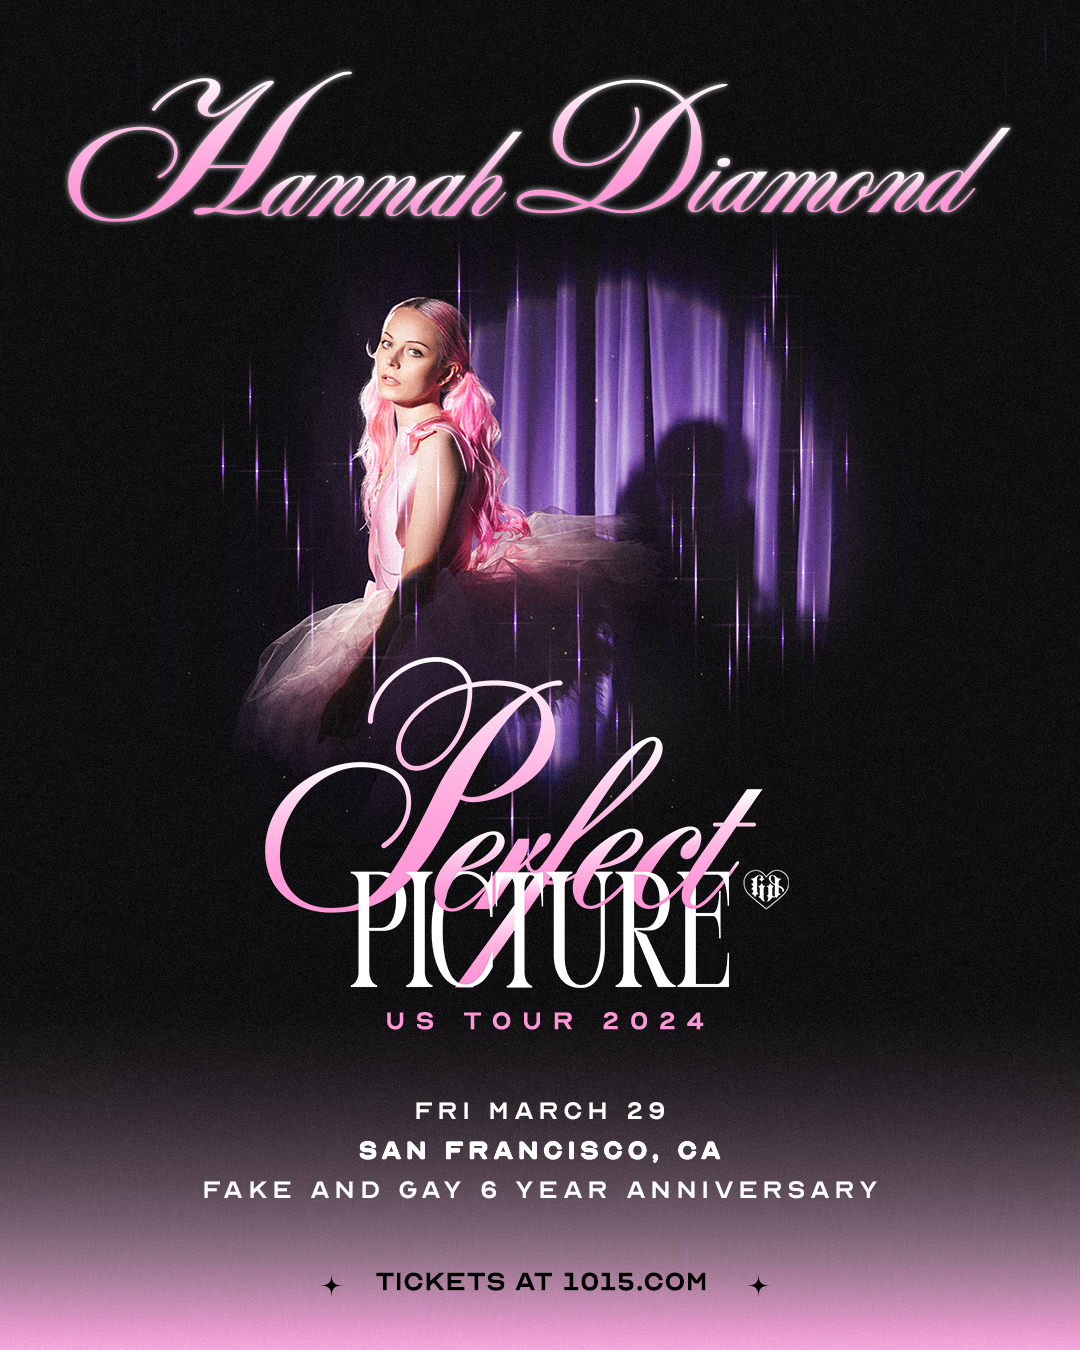 Hannah Diamond: The FAKE and GAY Anniversary - フライヤー表